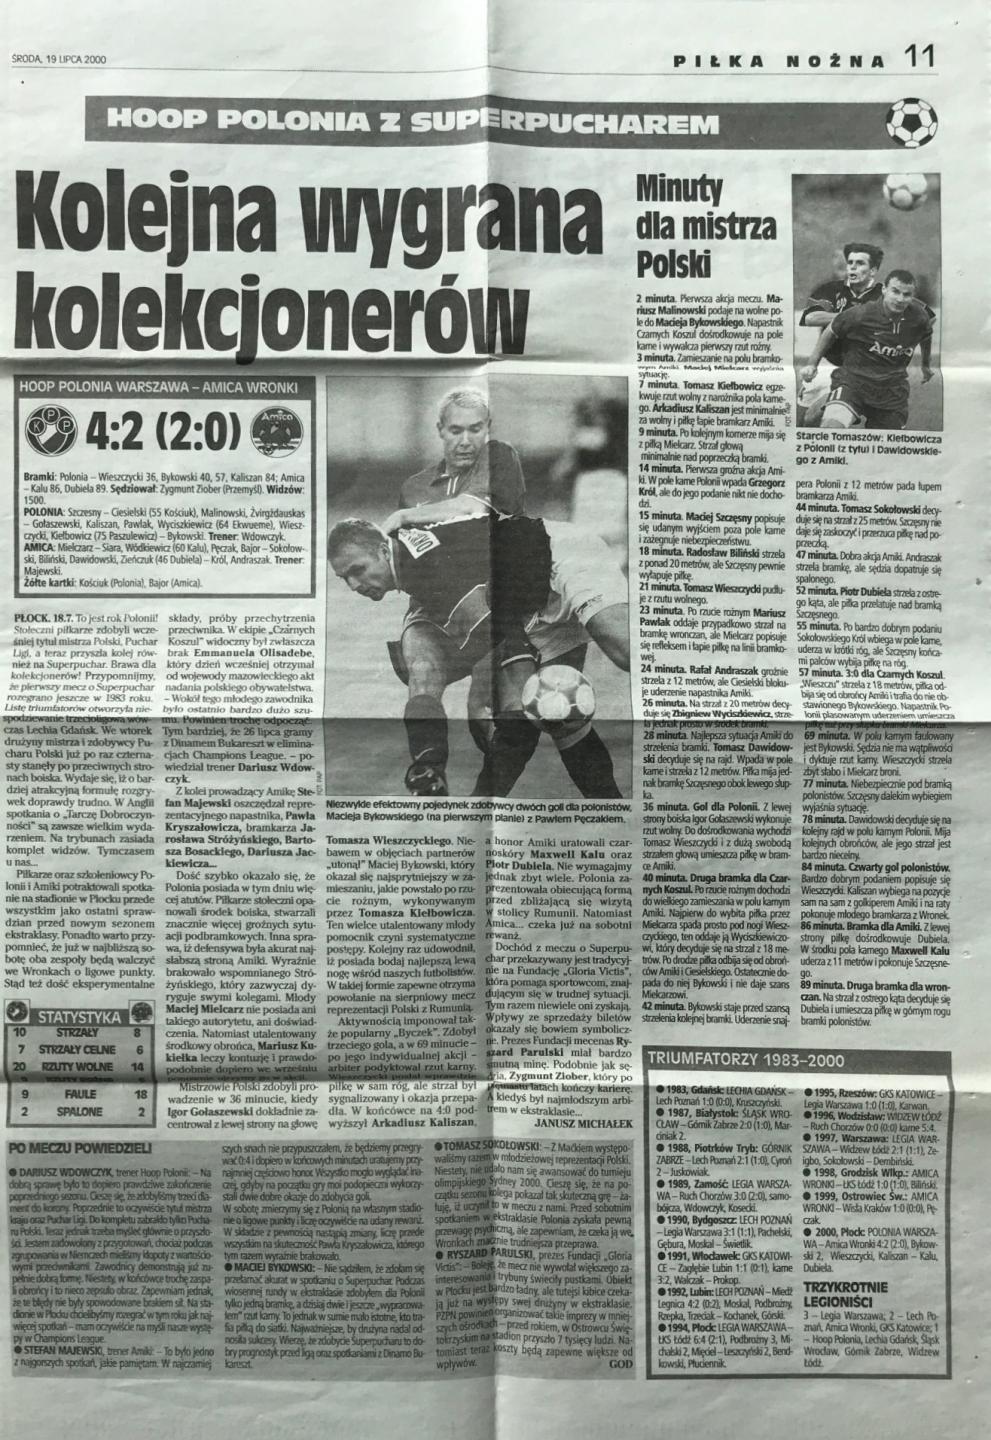 Przegląd Sportowy po meczu Polonia Warszawa - Amica Wronki 4:2 (18.07.2000).